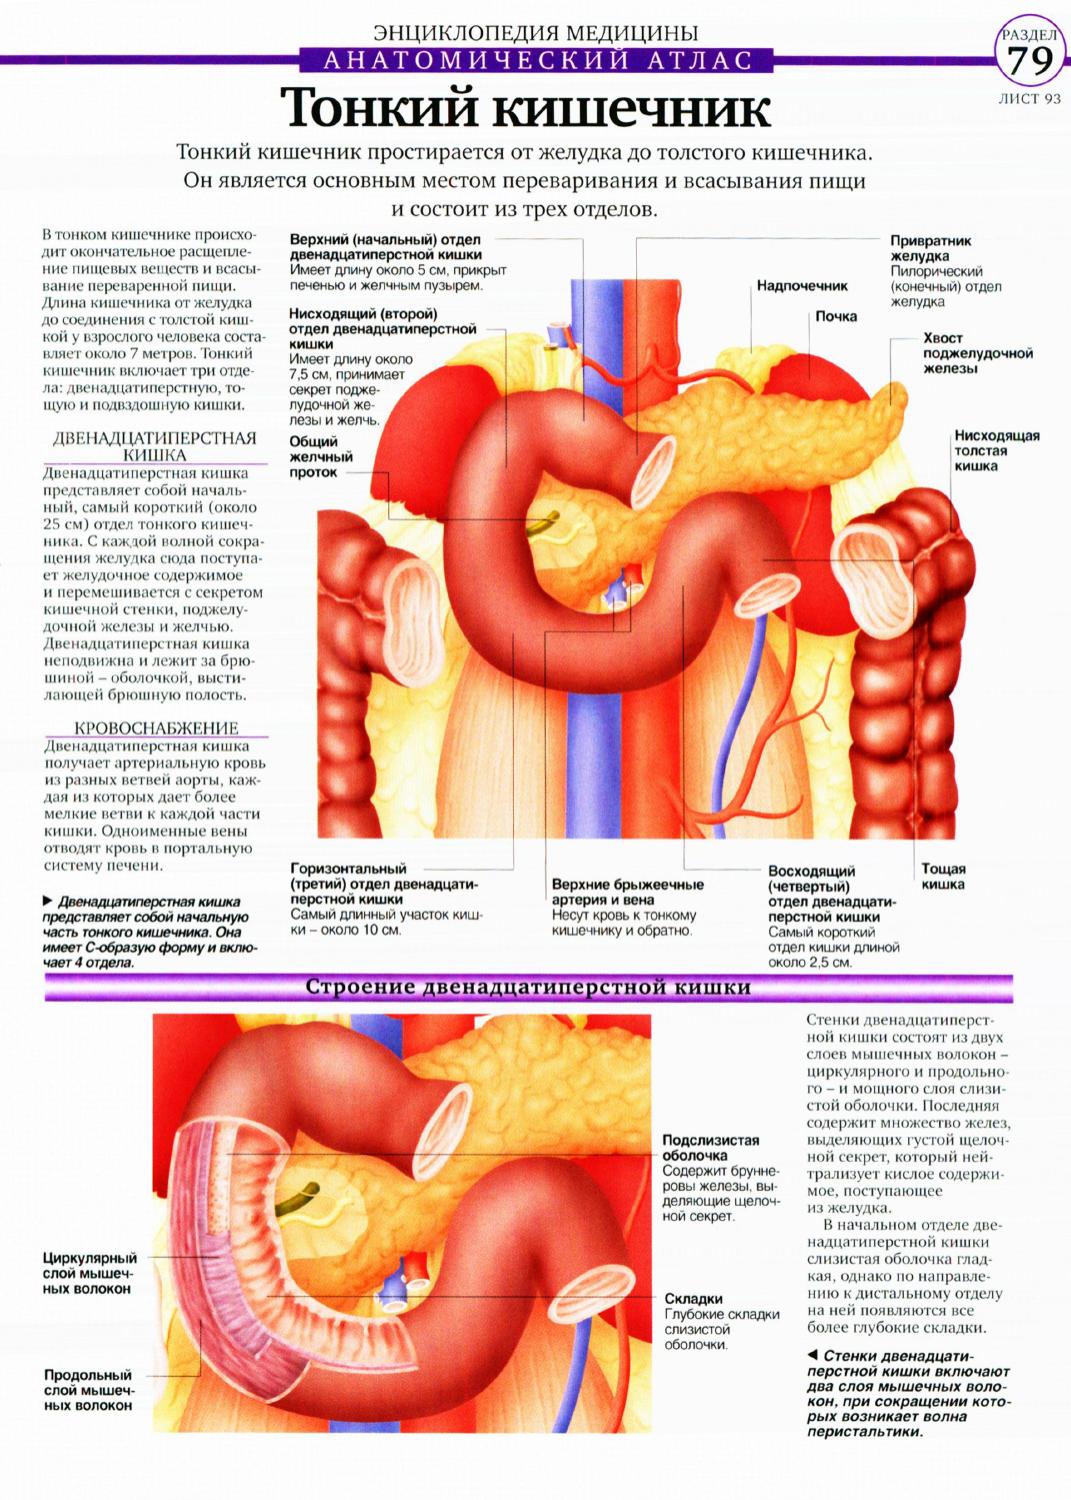 Анатомия кишечника человека атлас